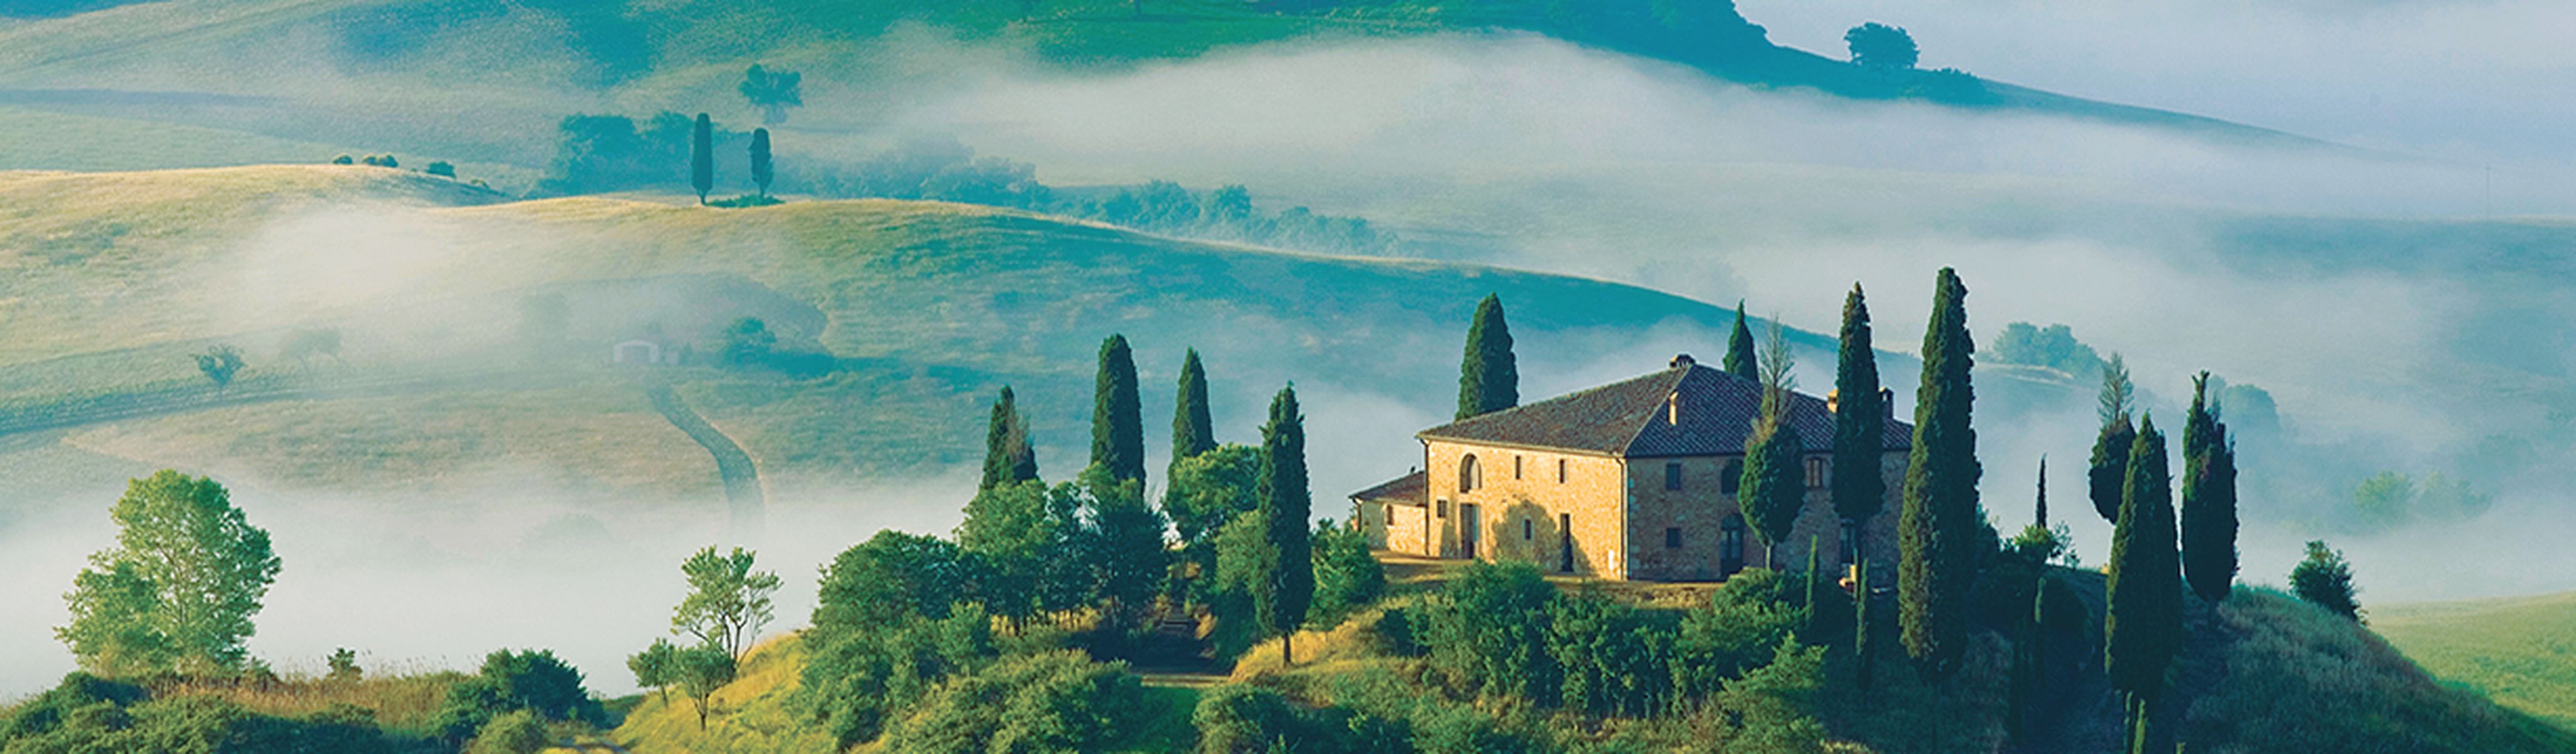 go ahead tours tuscany